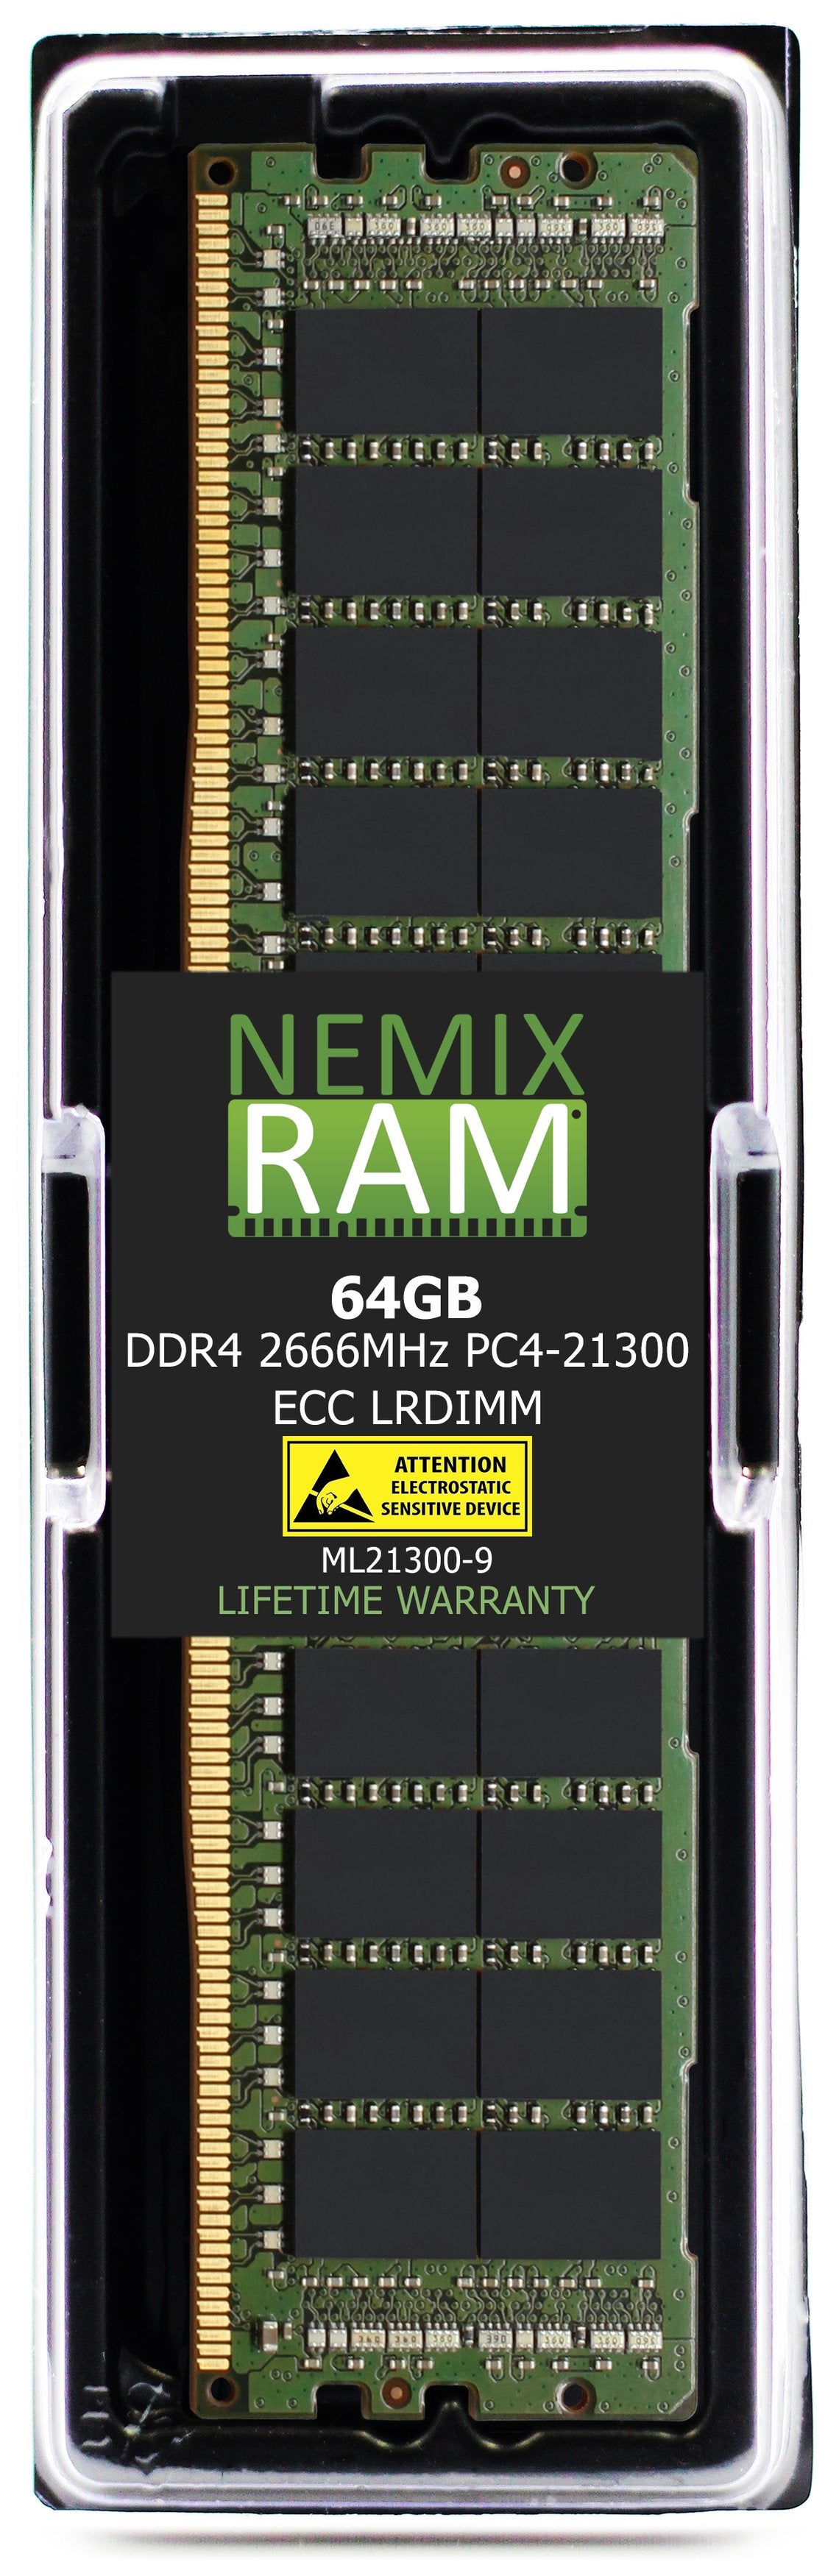 64GB DDR4 2666MHZ PC4-21300 LRDIMM Compatible with Supermicro MEM-DR464L-SL03-LR26